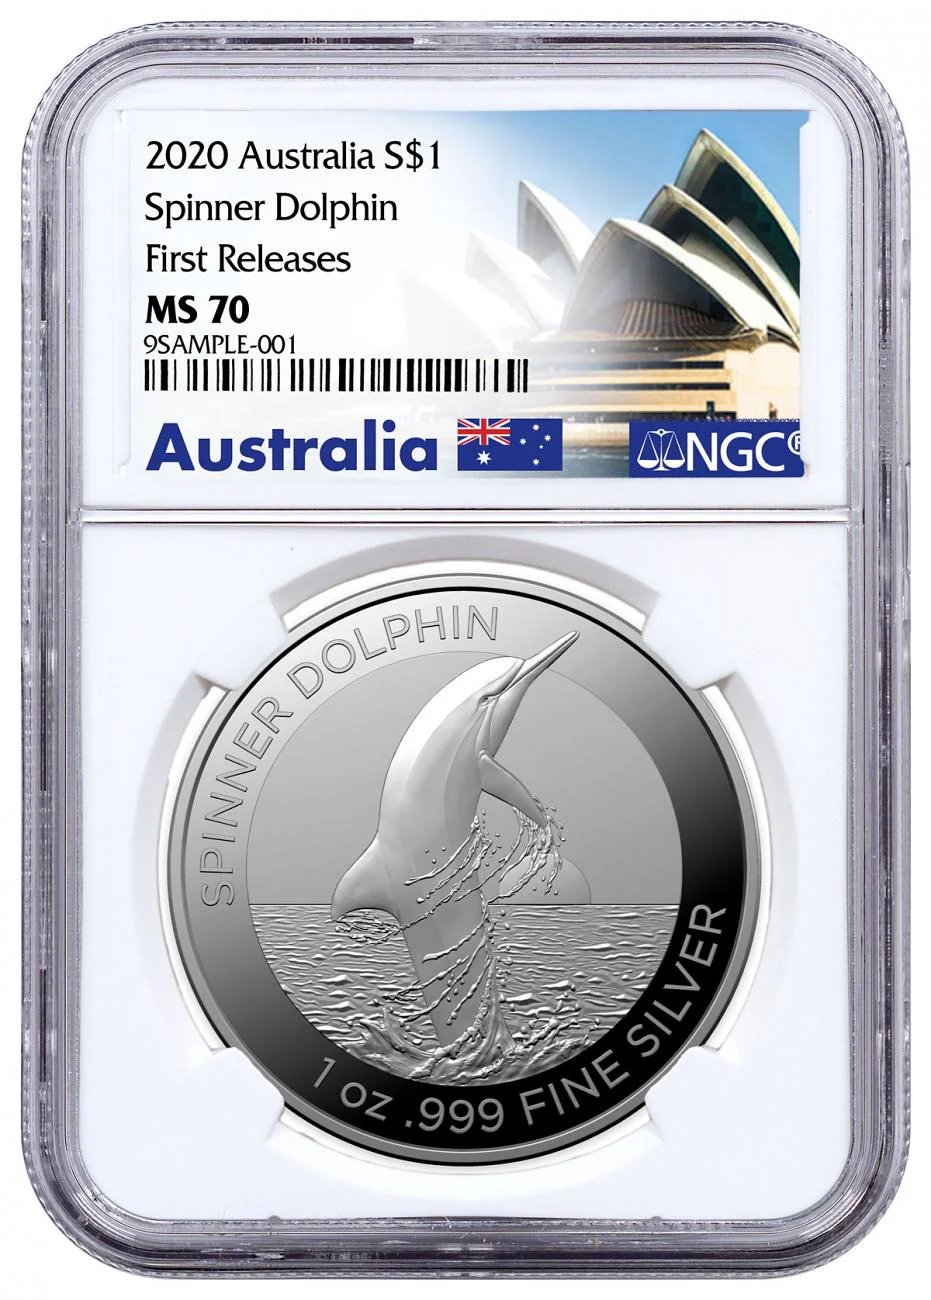 Image of 2020 Australia S$1 Spinner Dolphin